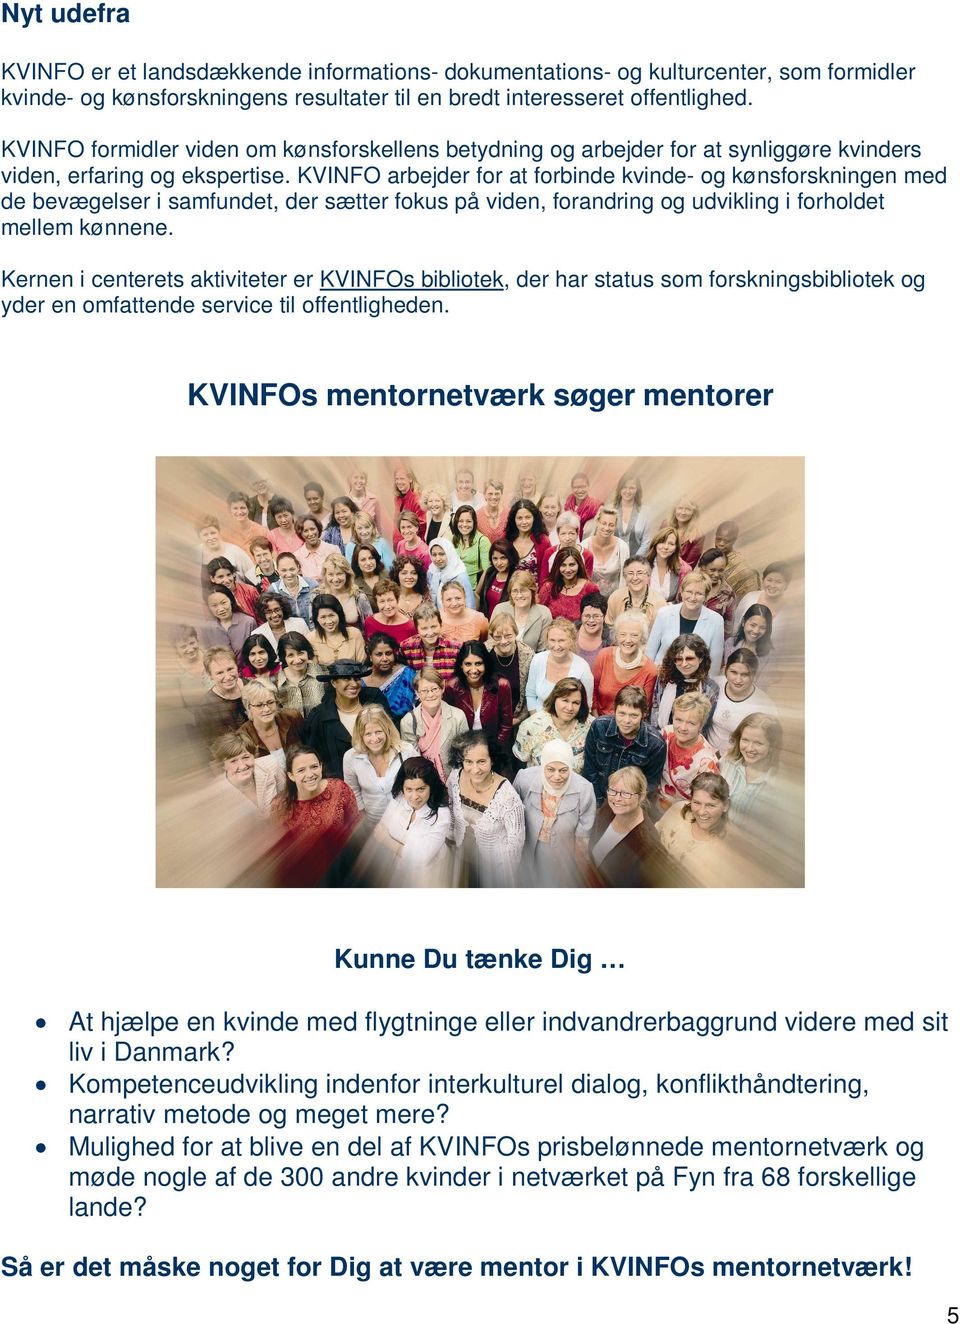 KVINFO arbejder for at forbinde kvinde- og kønsforskningen med de bevægelser i samfundet, der sætter fokus på viden, forandring og udvikling i forholdet mellem kønnene.